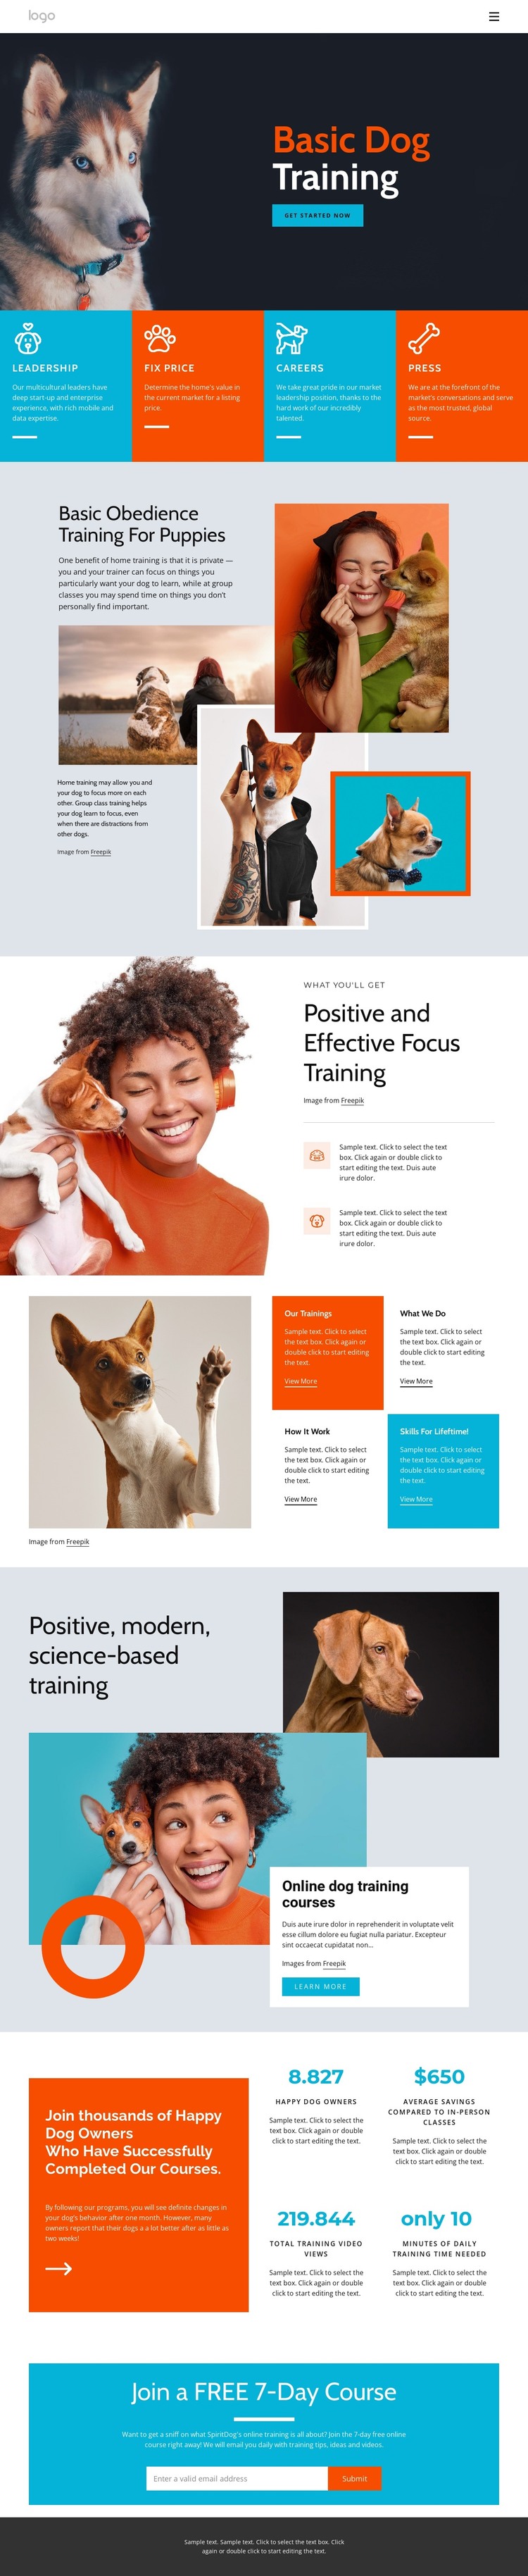 Dog training courses Web Design